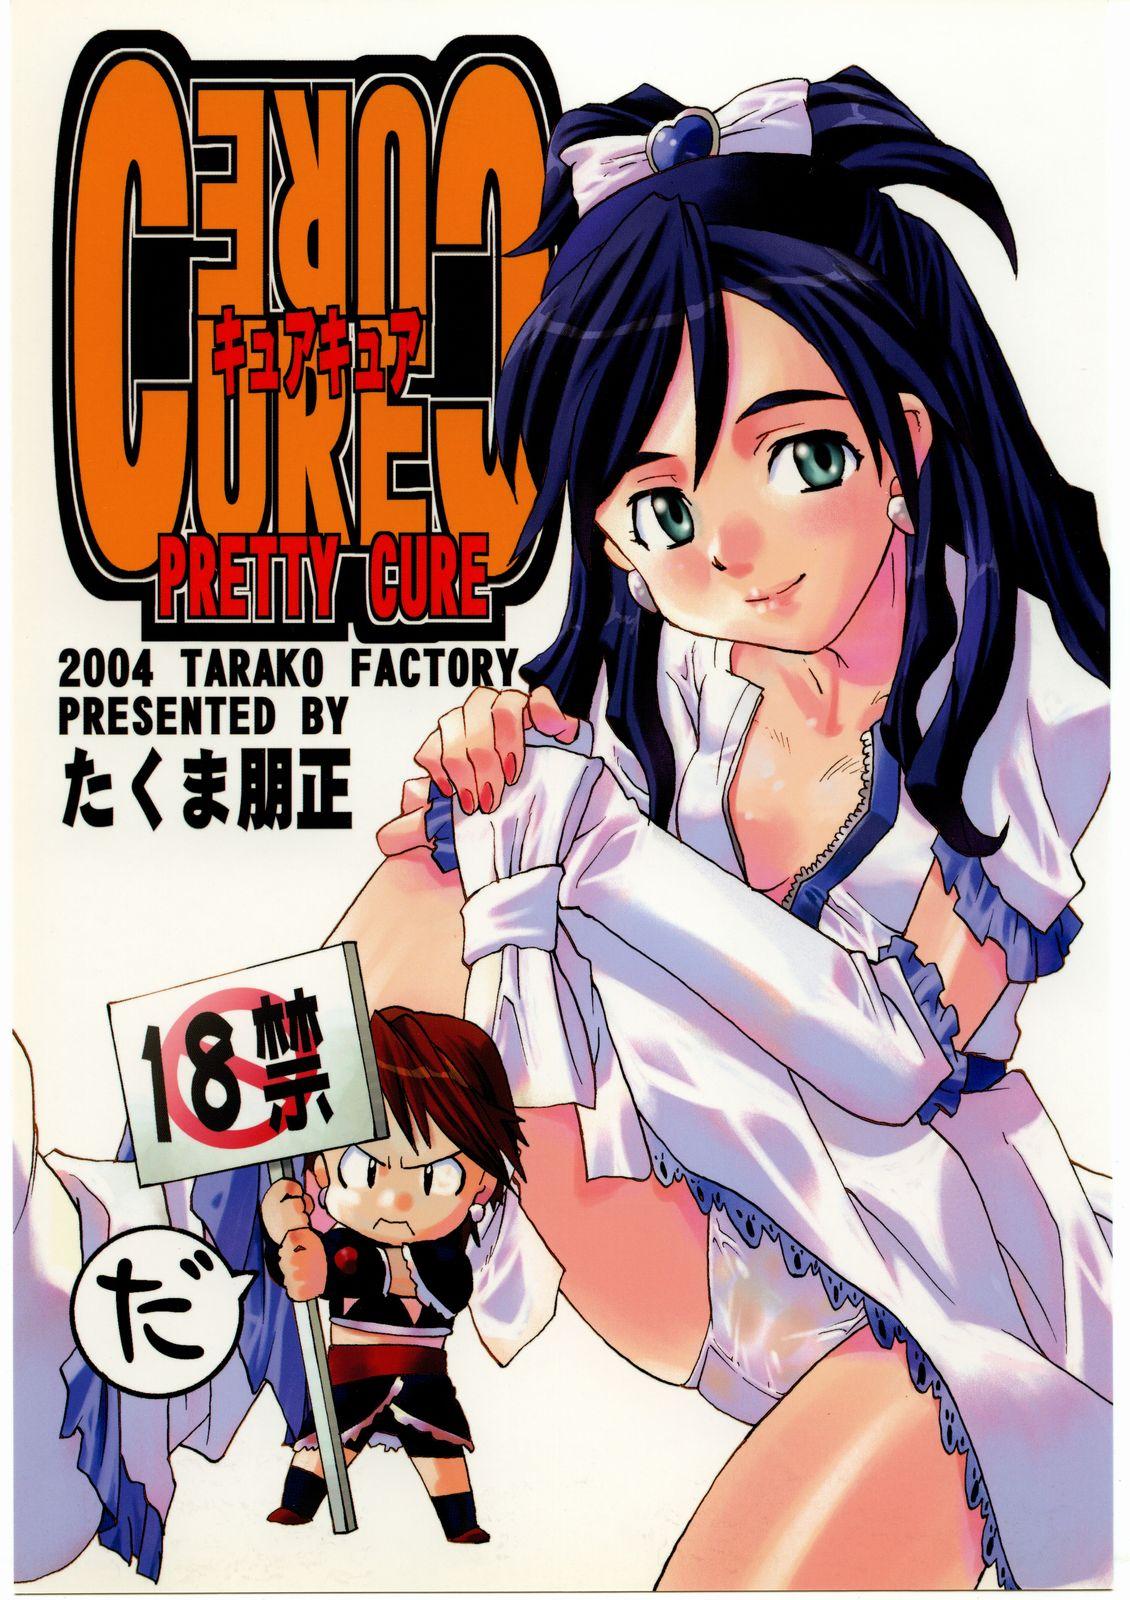 Pete Cure Cure - Futari wa pretty cure | futari wa precure Gay Twinks - Picture 1